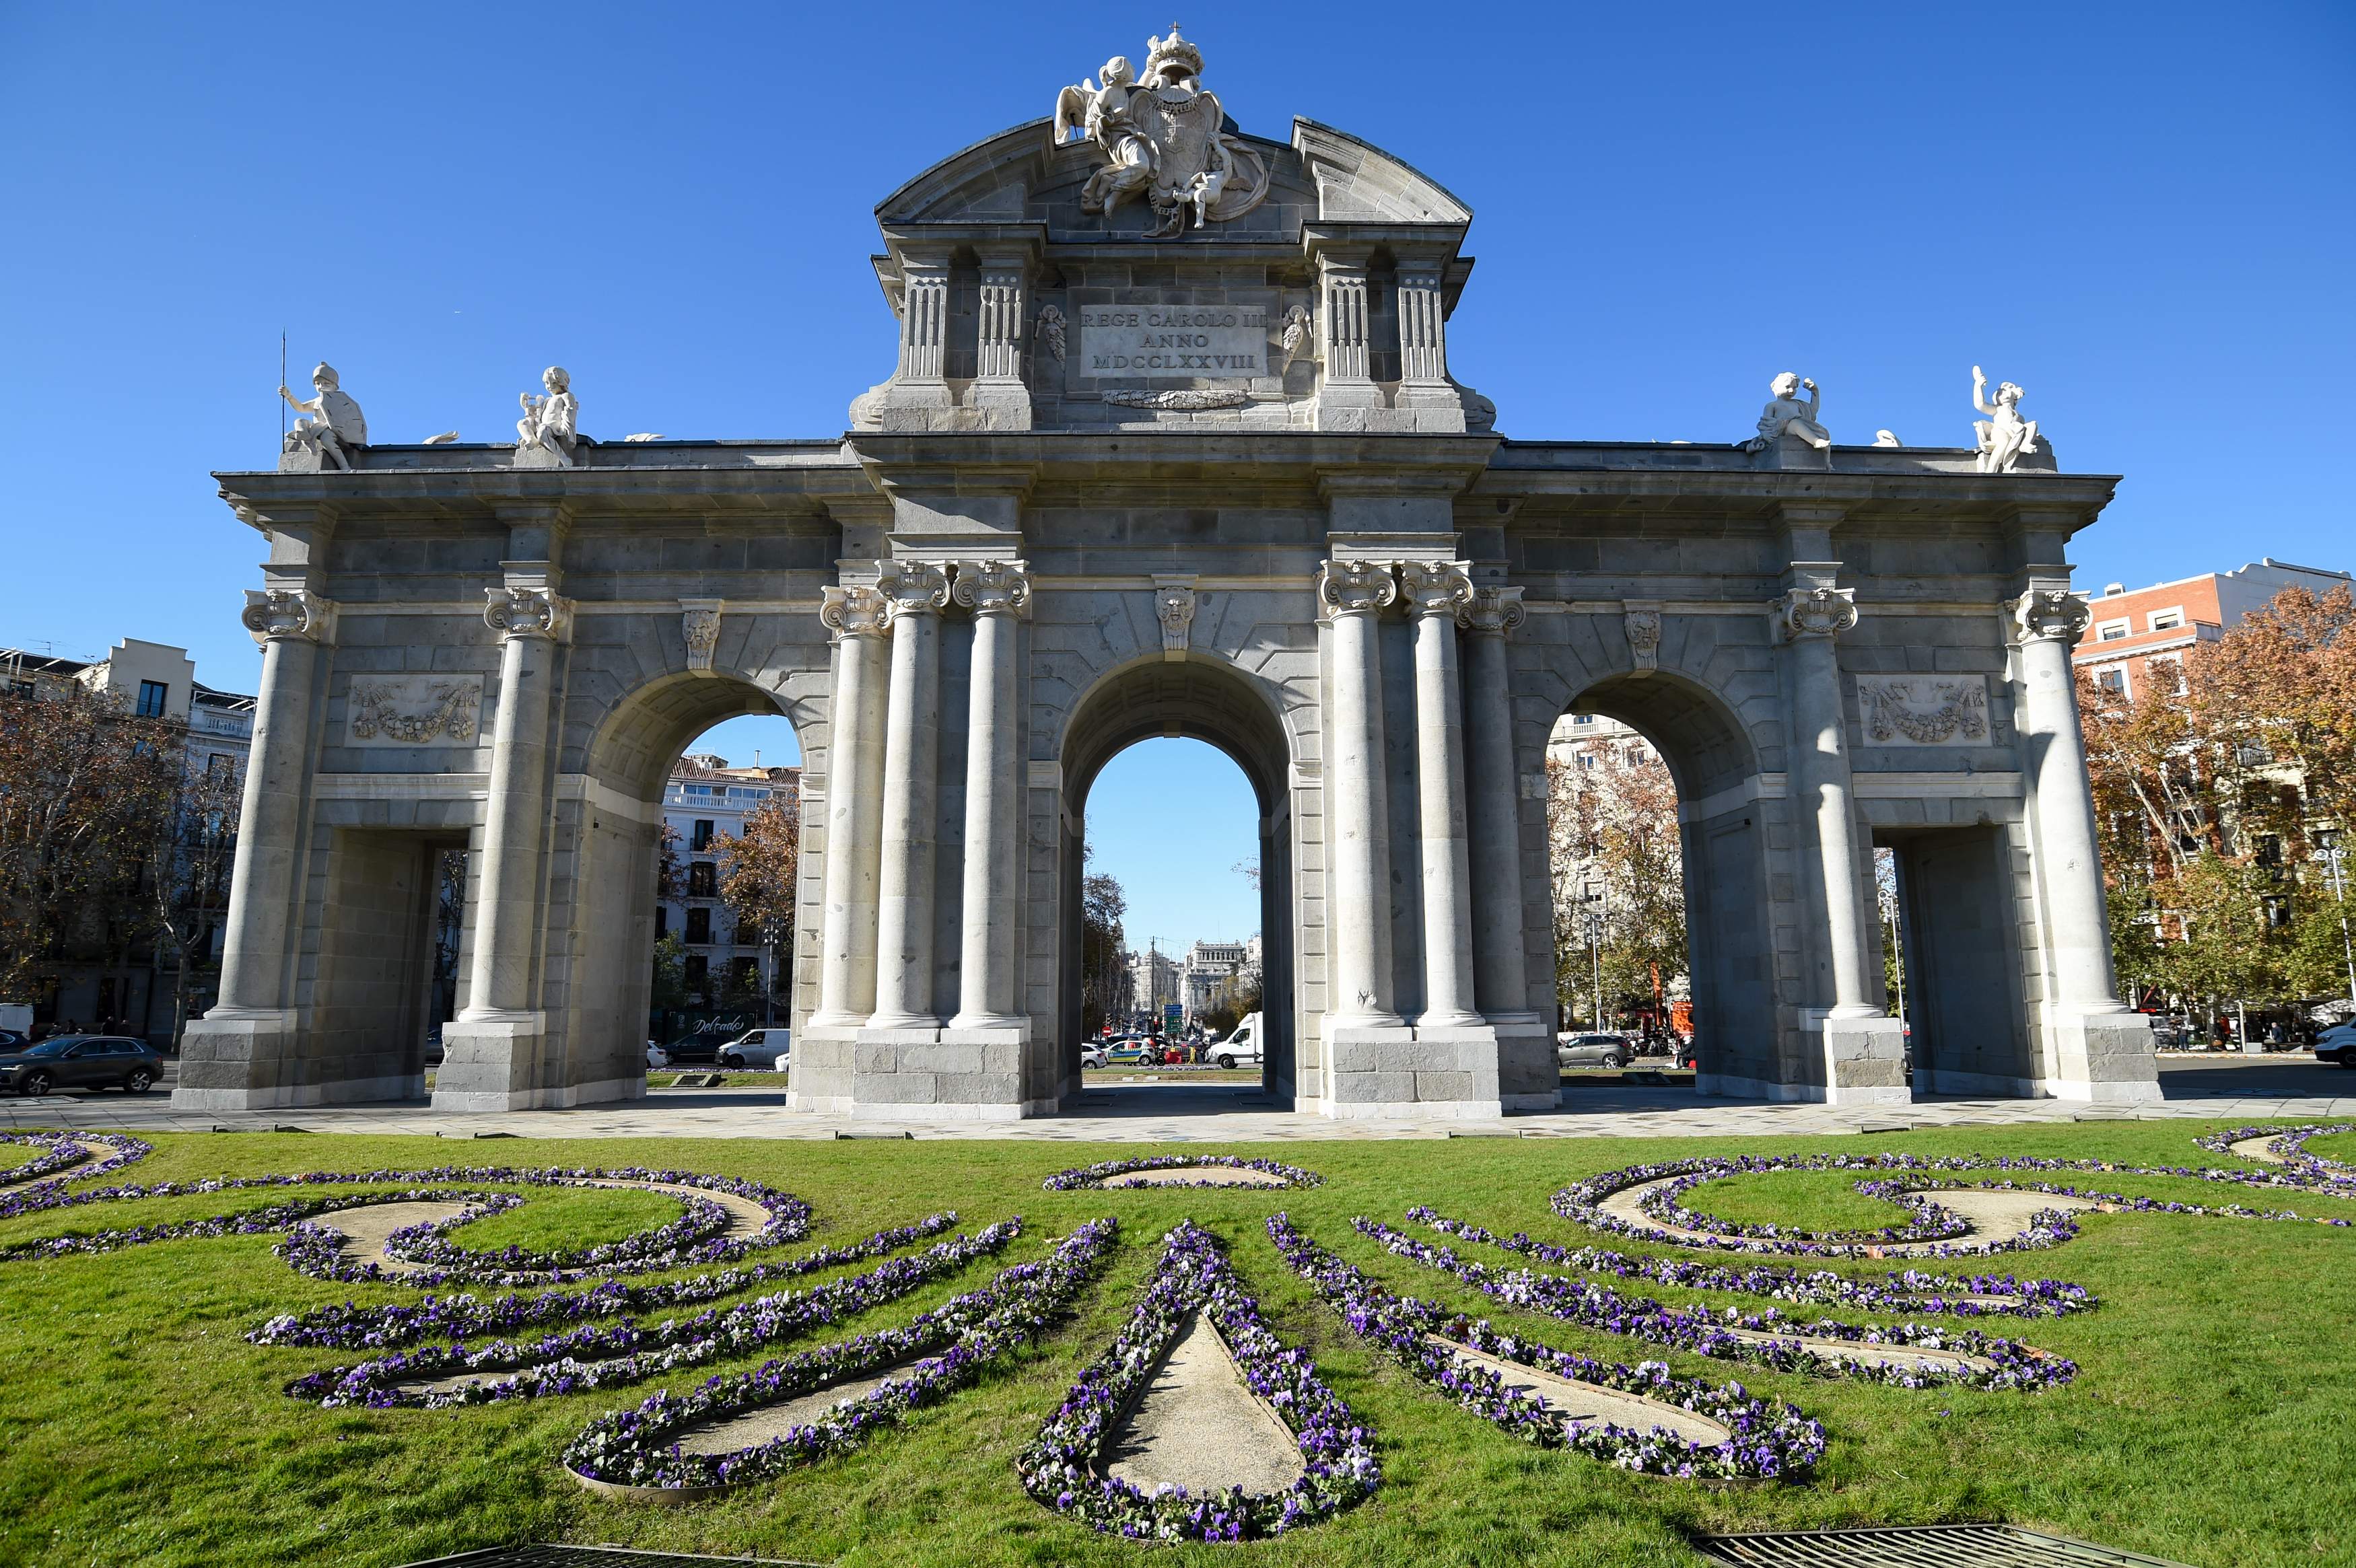 Madrid rep cinc vegades més inversió estrangera que Catalunya